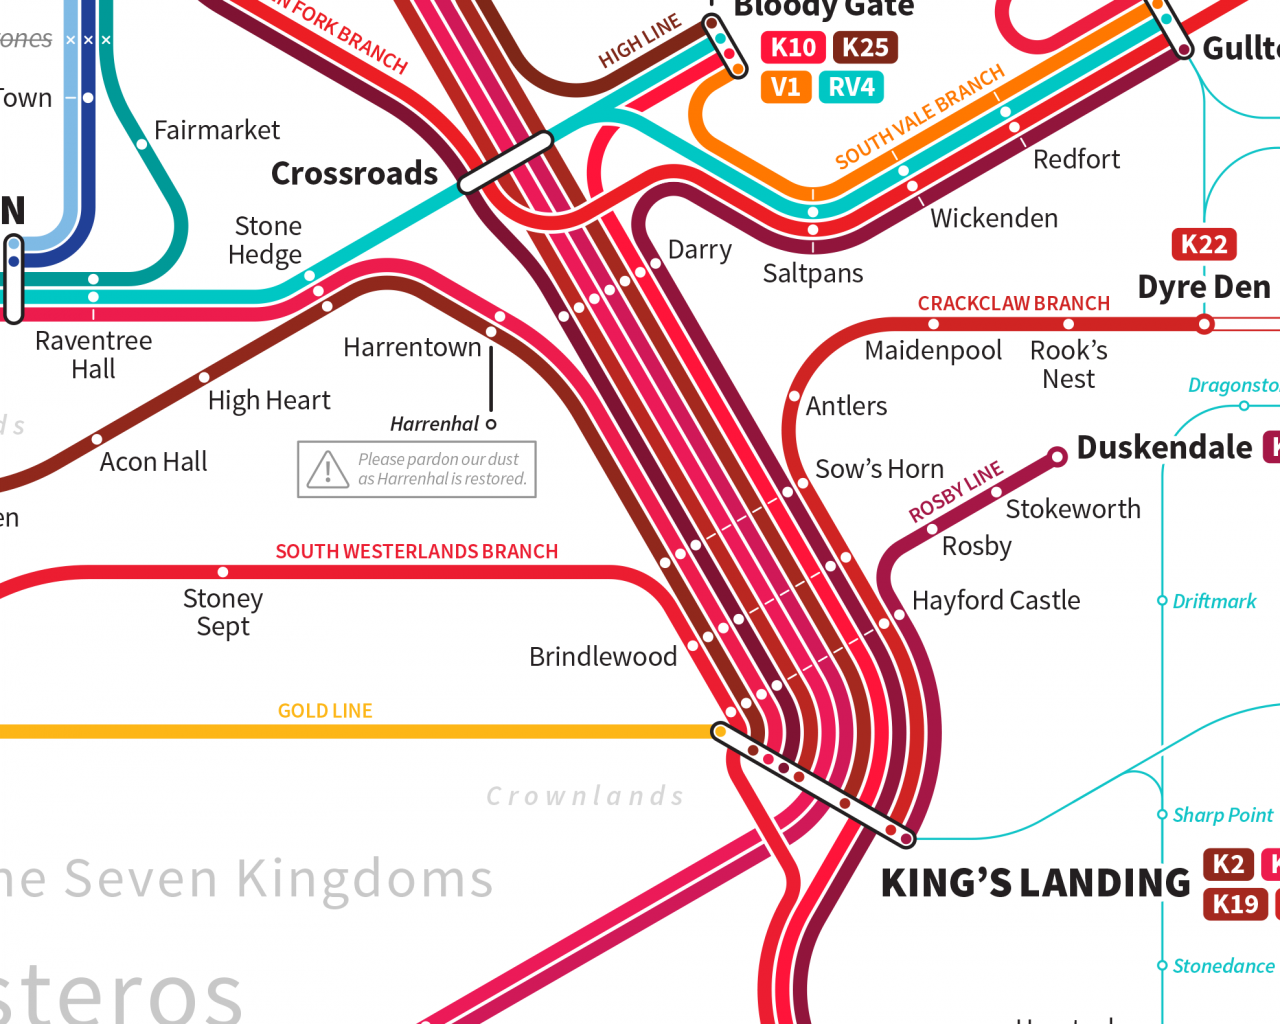 Bu Ayrıntılı Metro Haritası ile Westeros'ta Seyahatlerinizi Planlayın